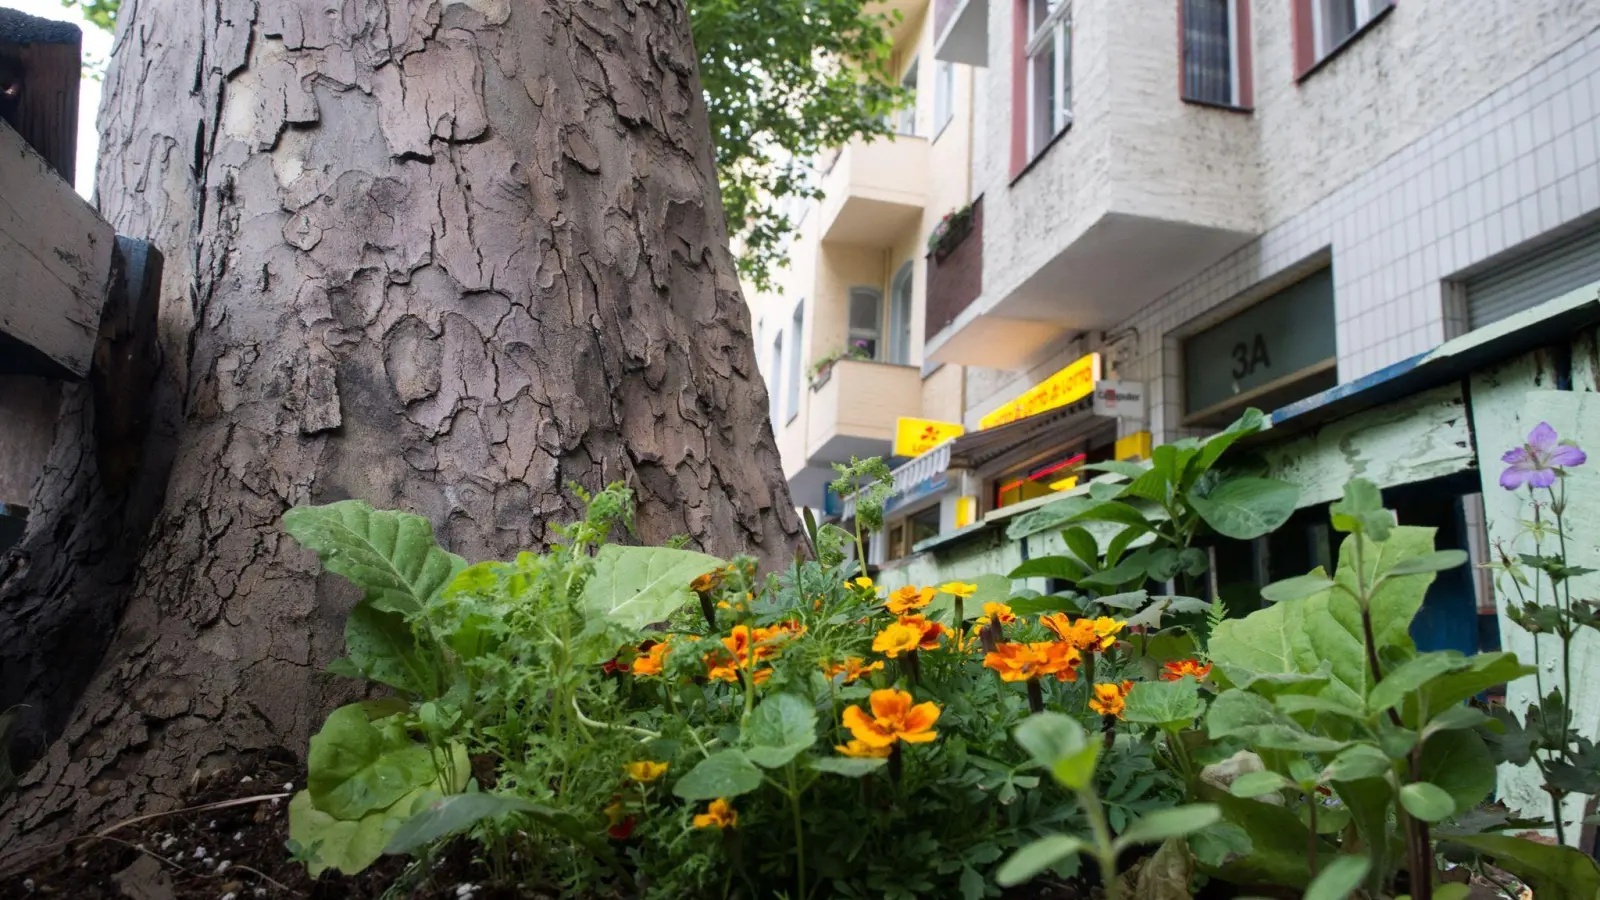 Immer öfter sieht man rings um Straßenbäume kleine Blumenbeete - das ist nicht nur hübsch anzusehen, sondern schützt unter Umständen auch die Bäume vor dem Vertrocknen. (Foto: Franziska Gabbert/dpa-tmn)